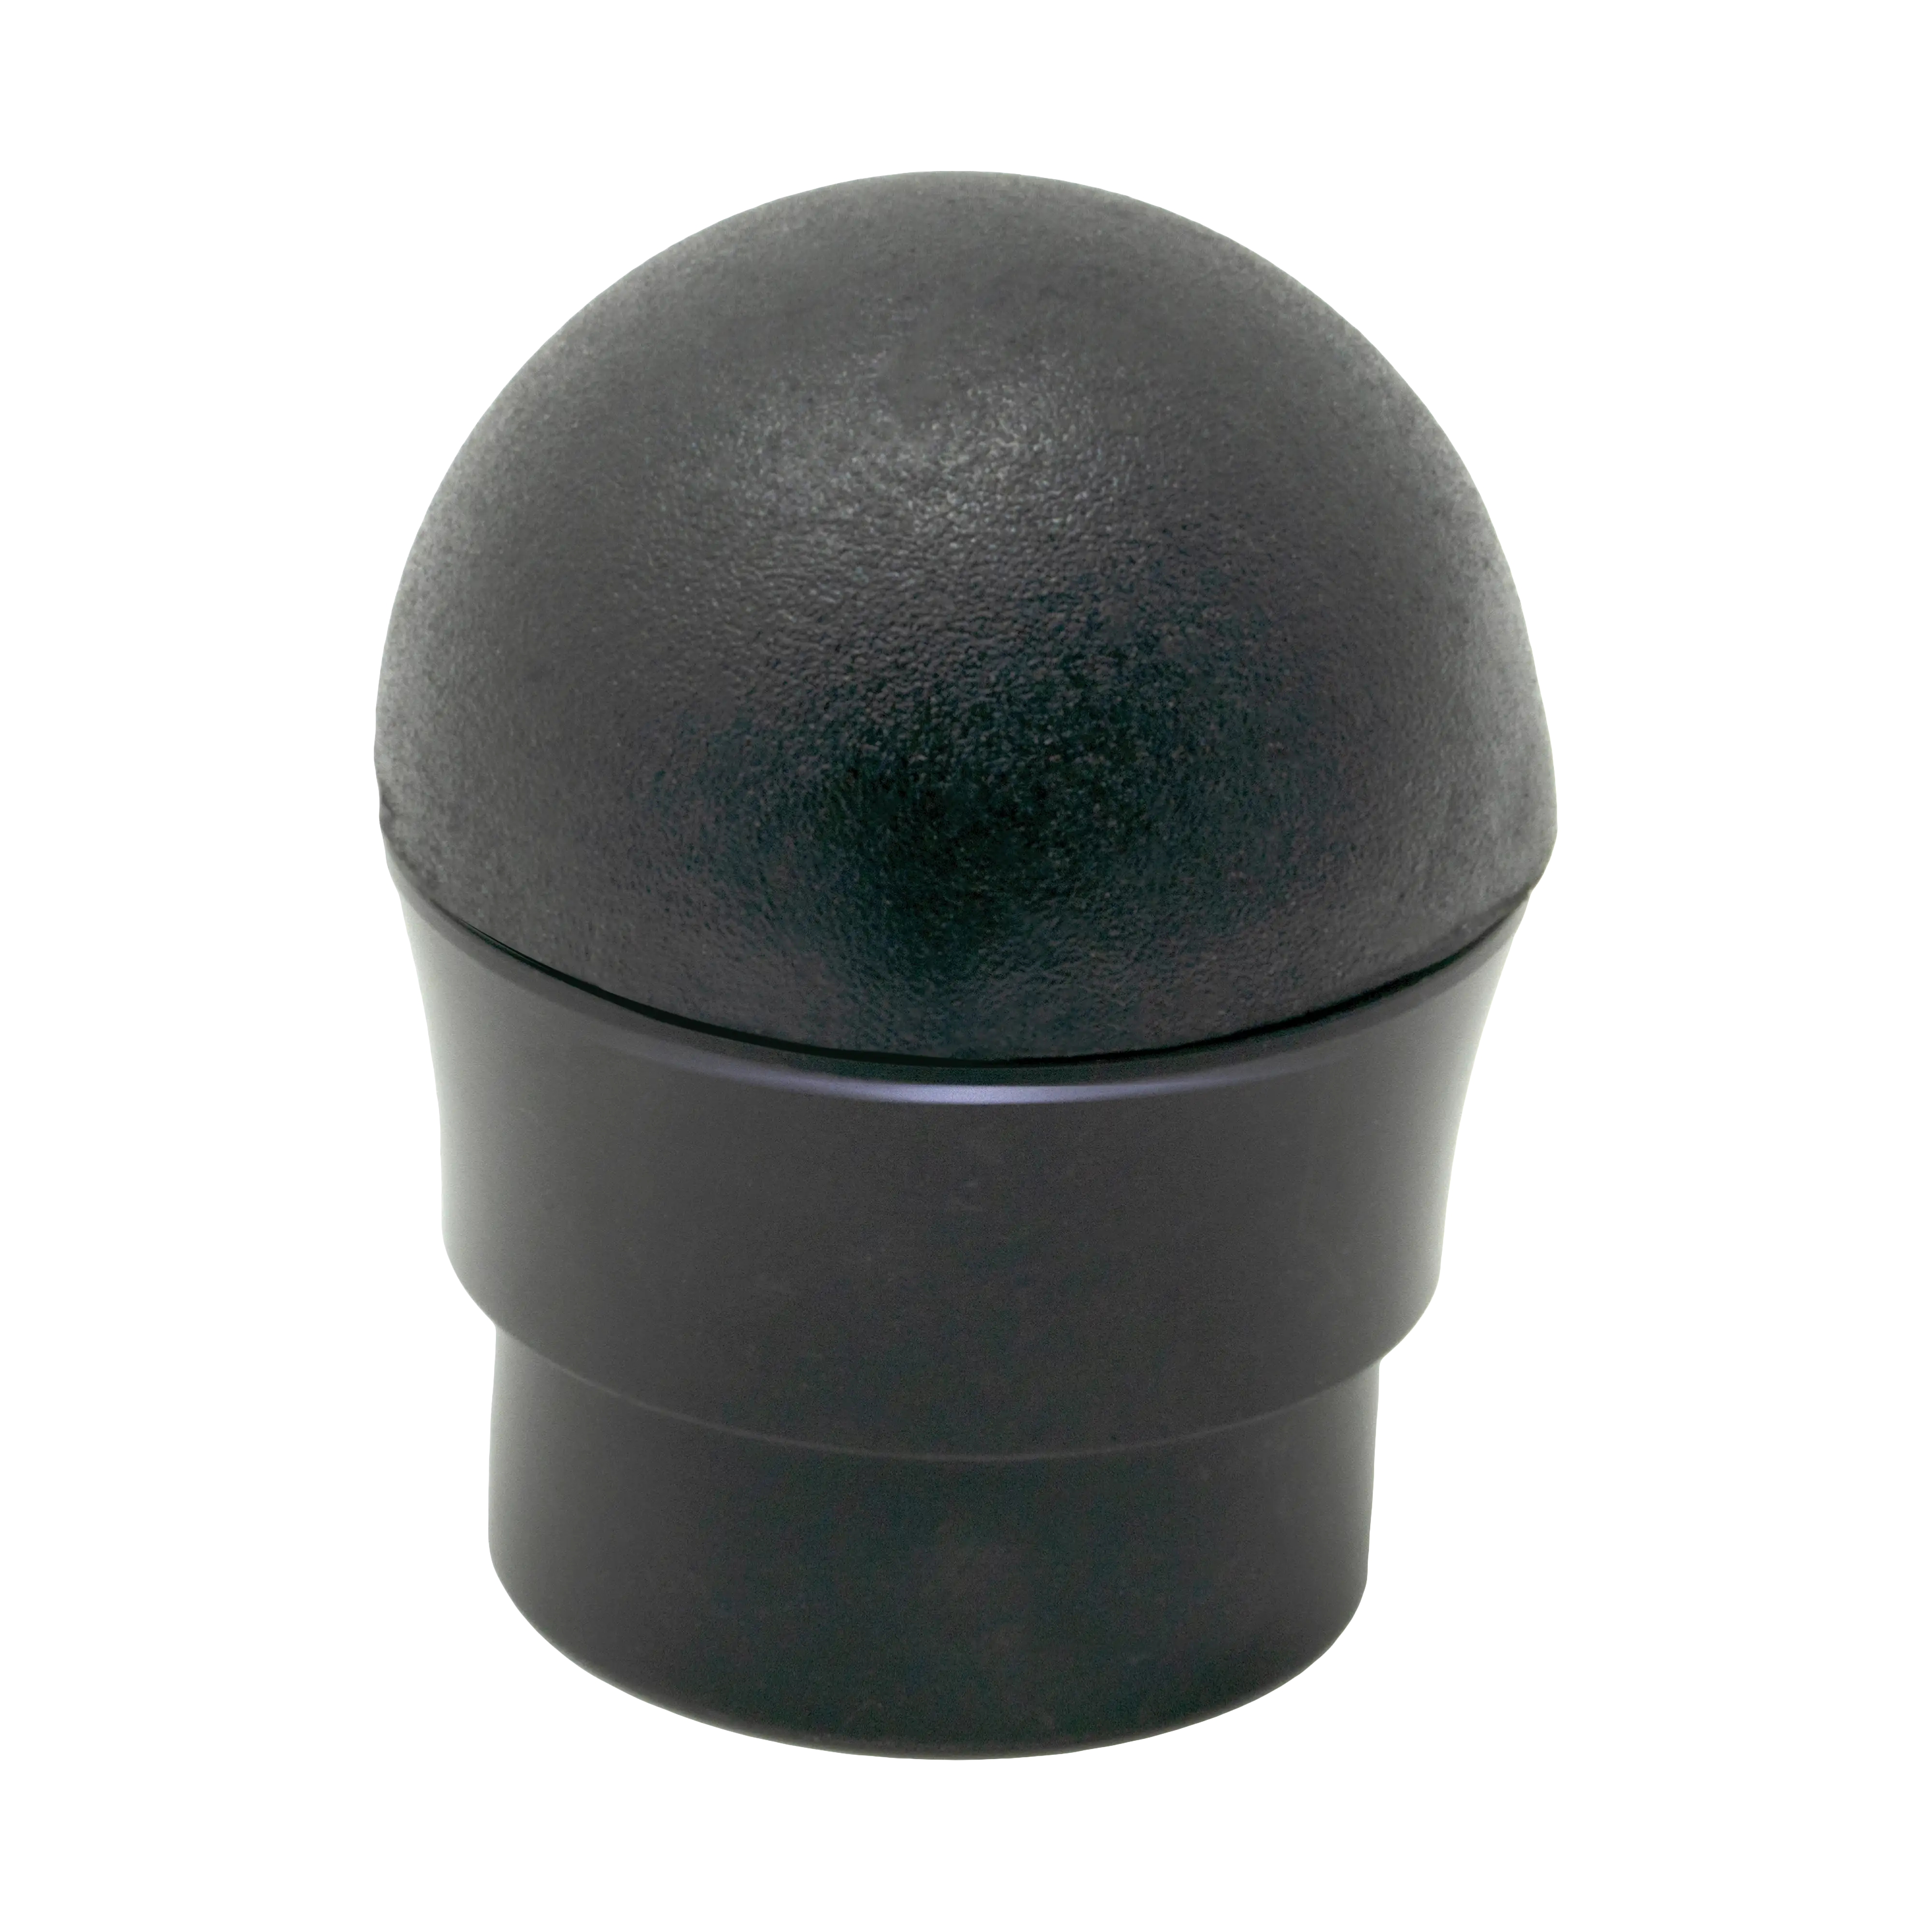 Fuji Rubber Butt Cap (Gimbal) - Ferrules,Trim Rings,Butt Caps,Gimbals,Winding  Checks, Buttons - Handles & Grips